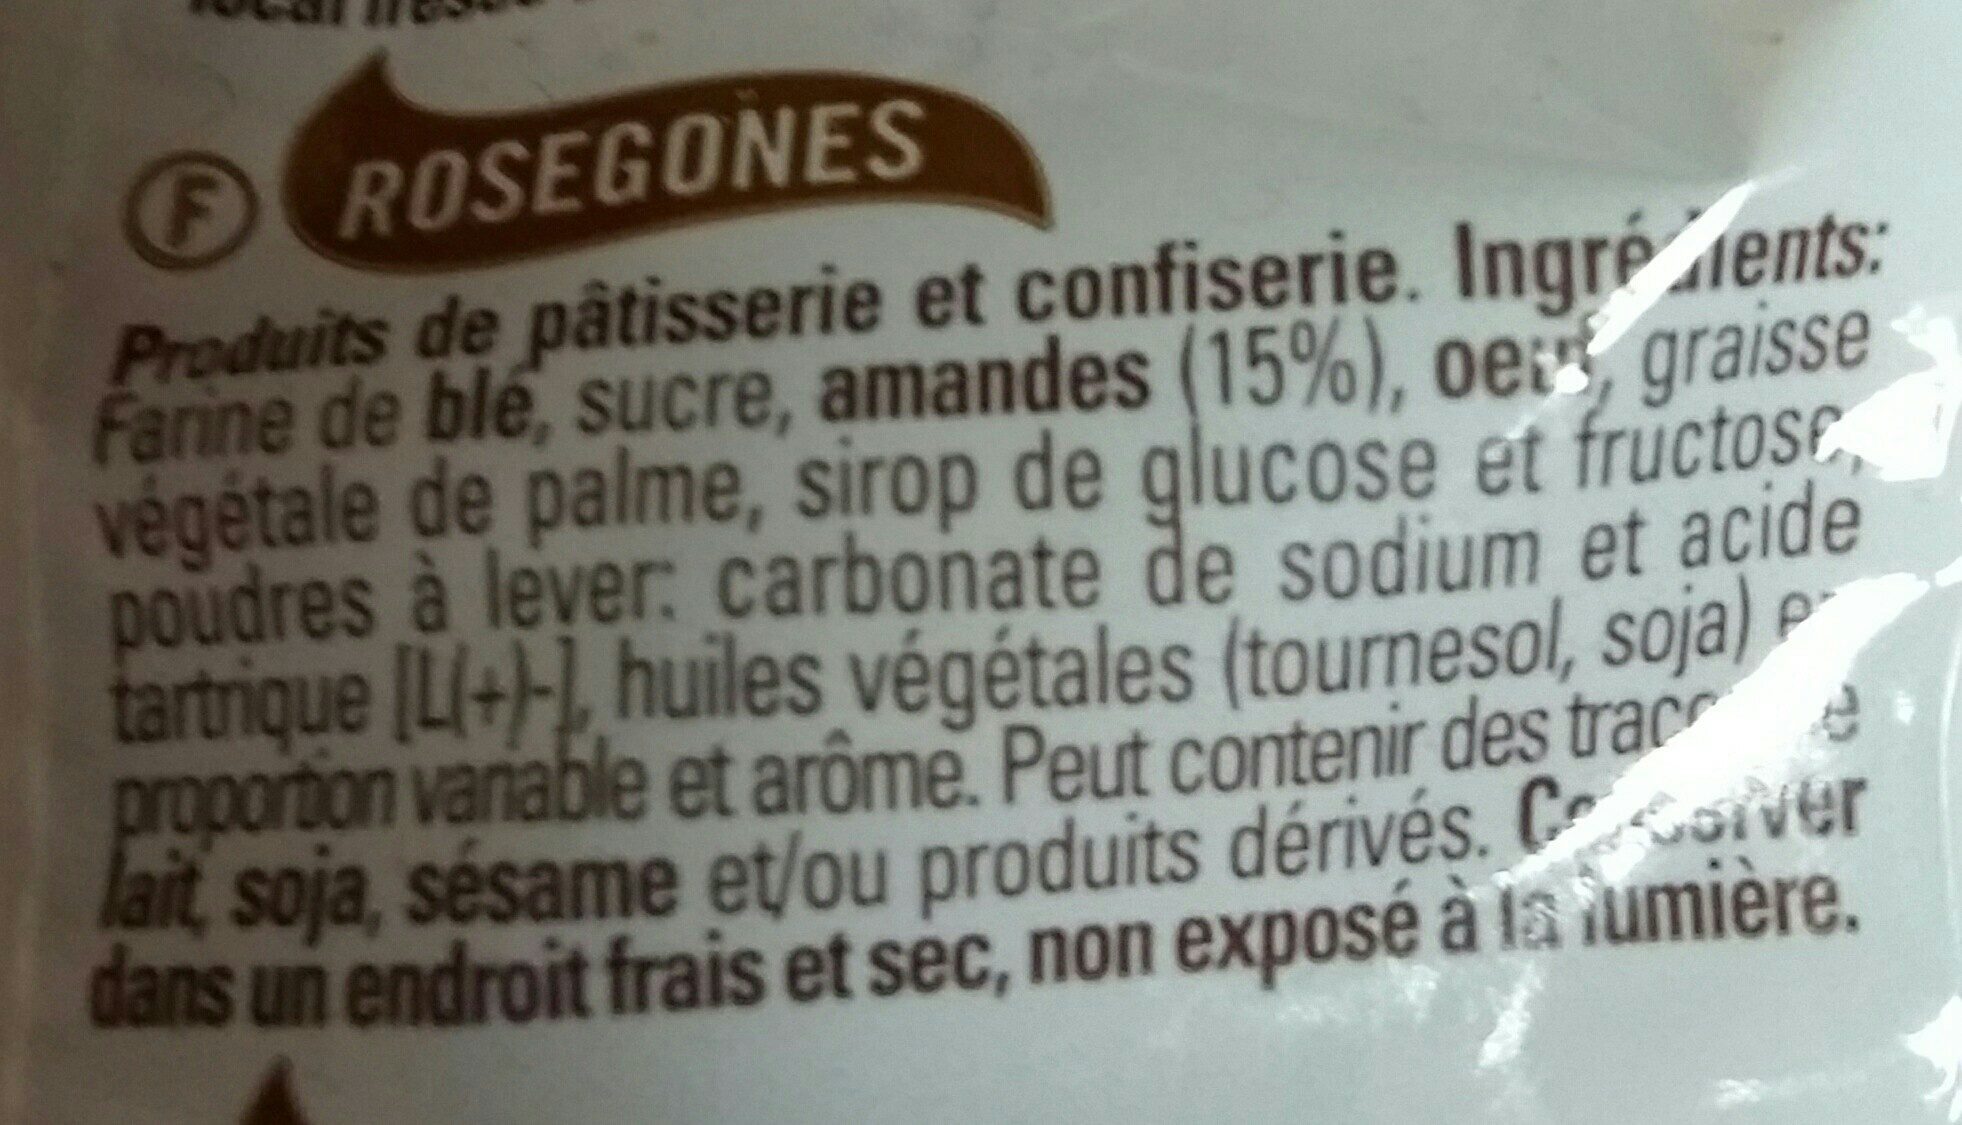 Rosegones con Almendras - Ingredients - fr